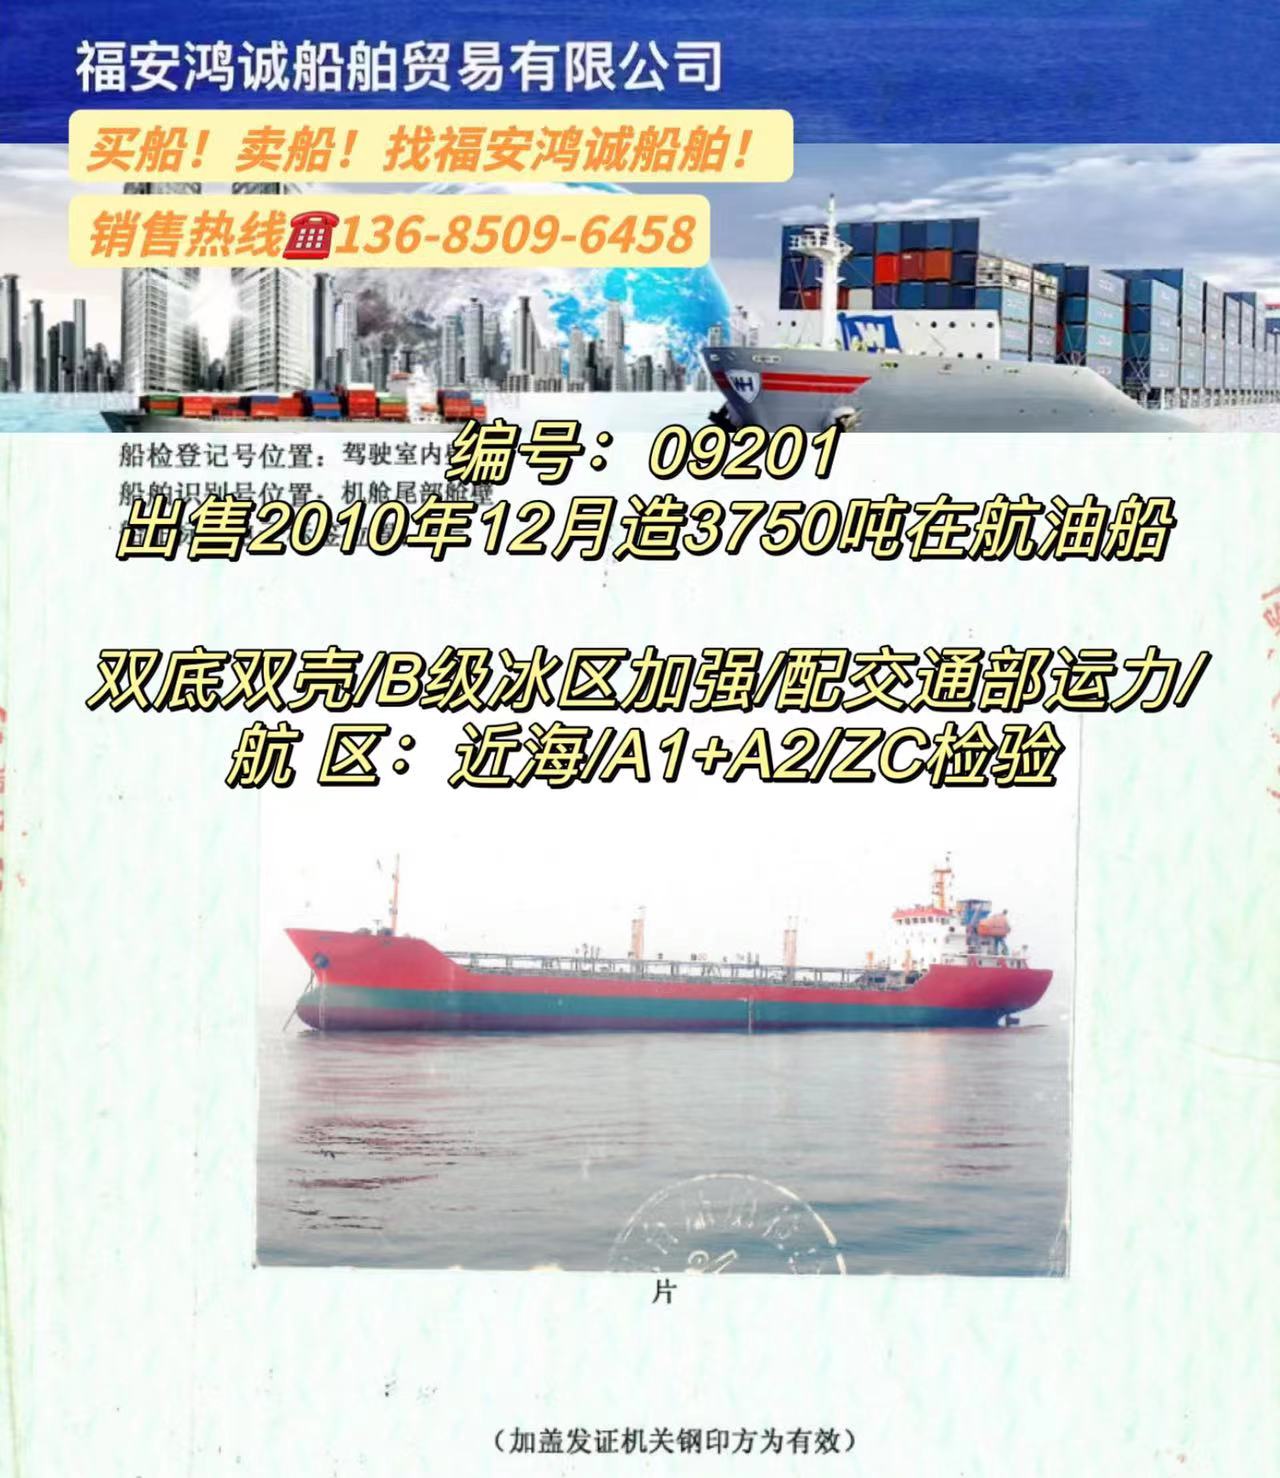 出售3750吨油船2010年12月江苏建造/